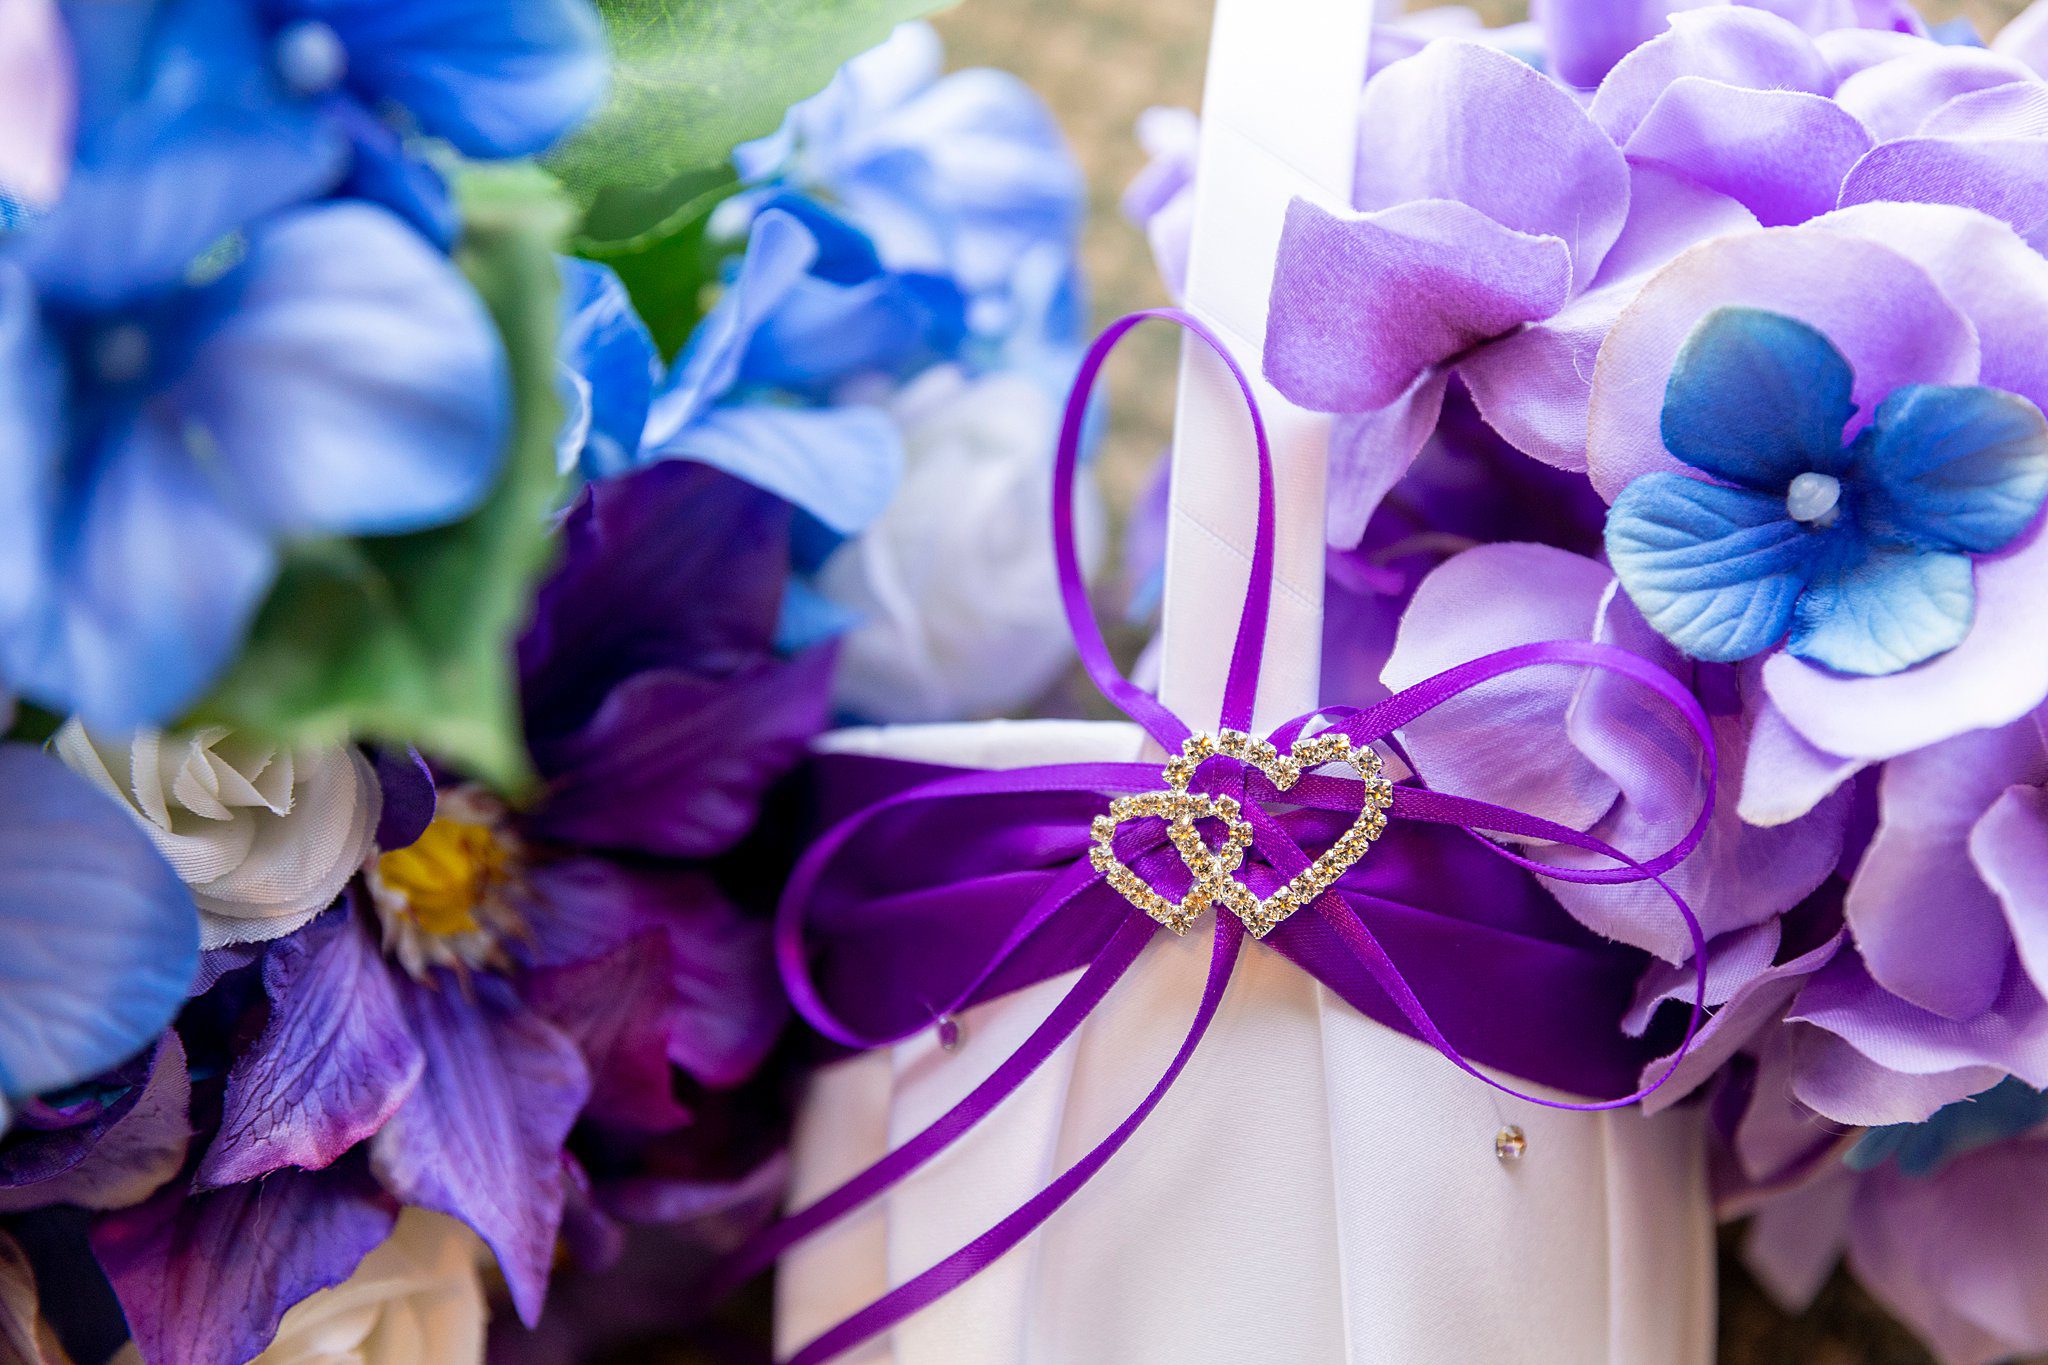 details of a bridal bouquet